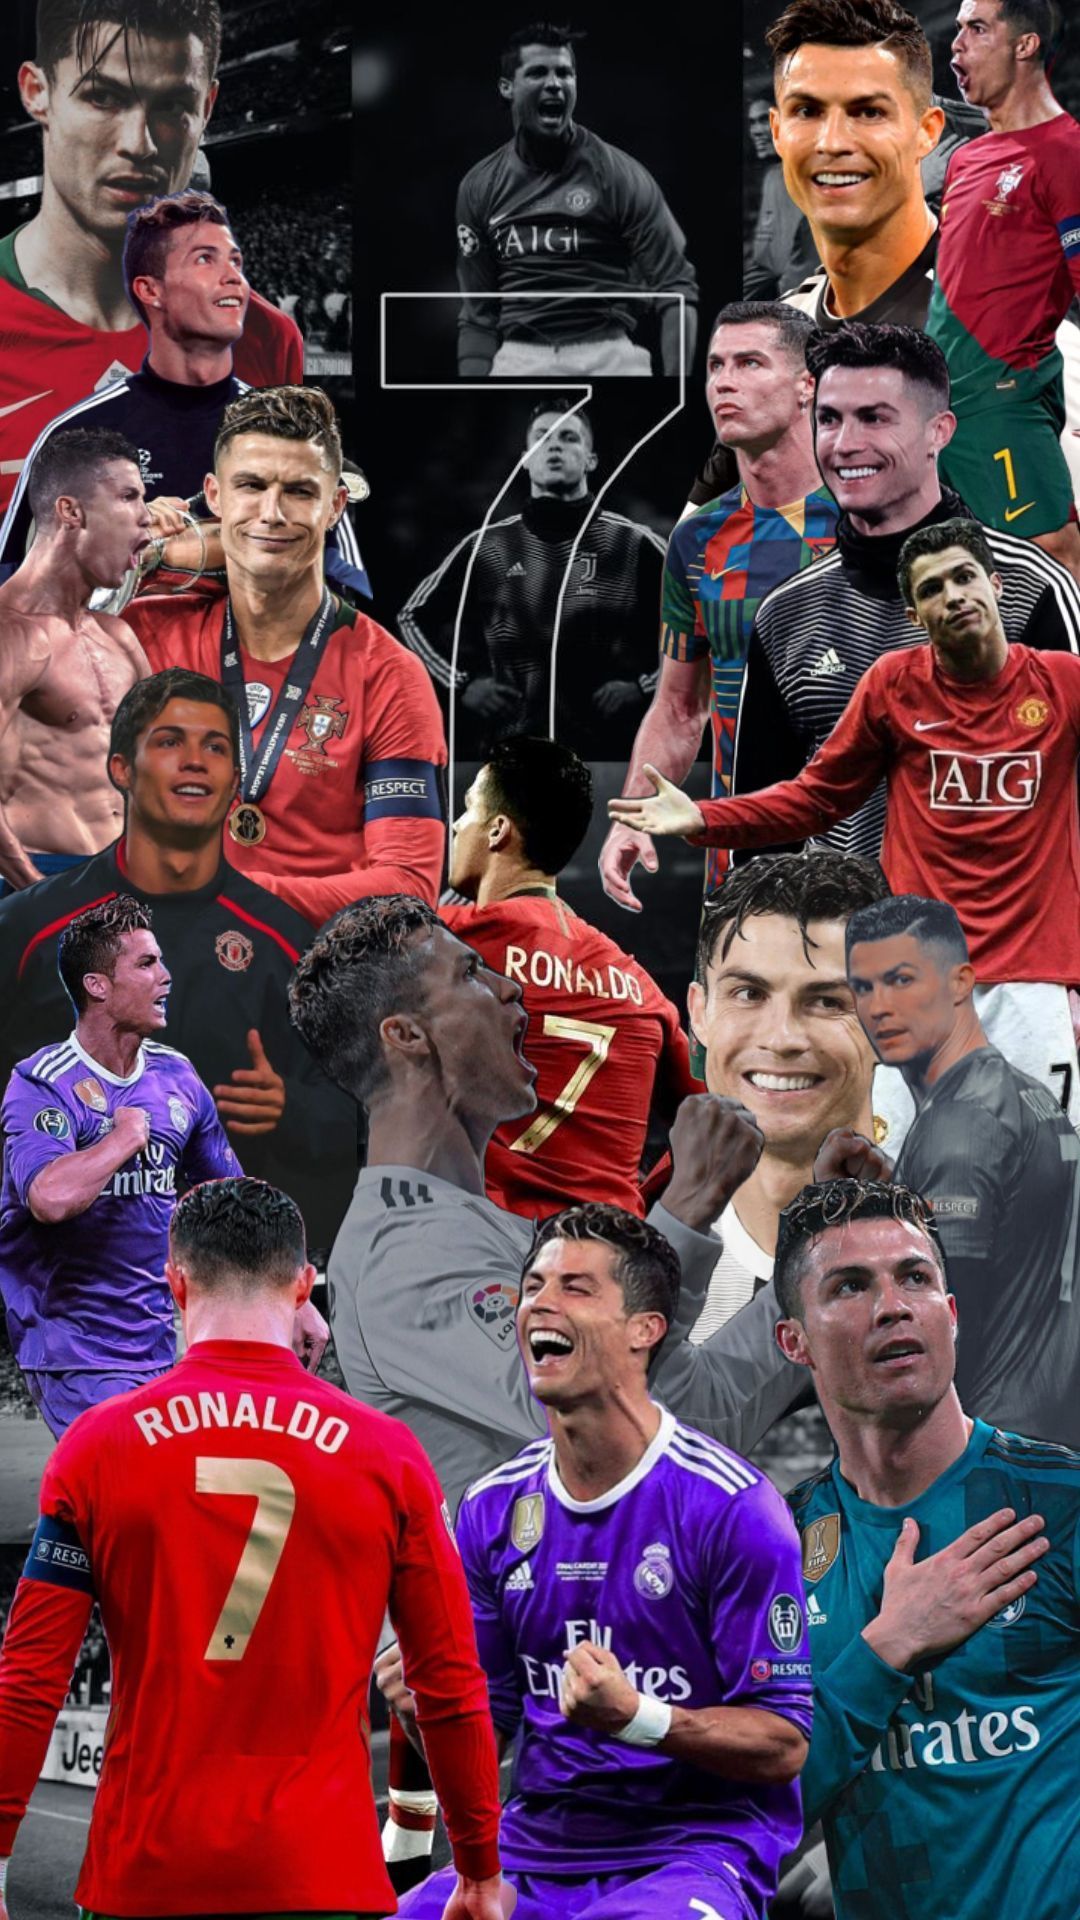  Cristiano Ronaldo Hintergrundbild 1080x1920. Cristiano Ronaldo. Cristiano ronaldo juventus, Cristiano ronaldo young, Cristiano ronaldo